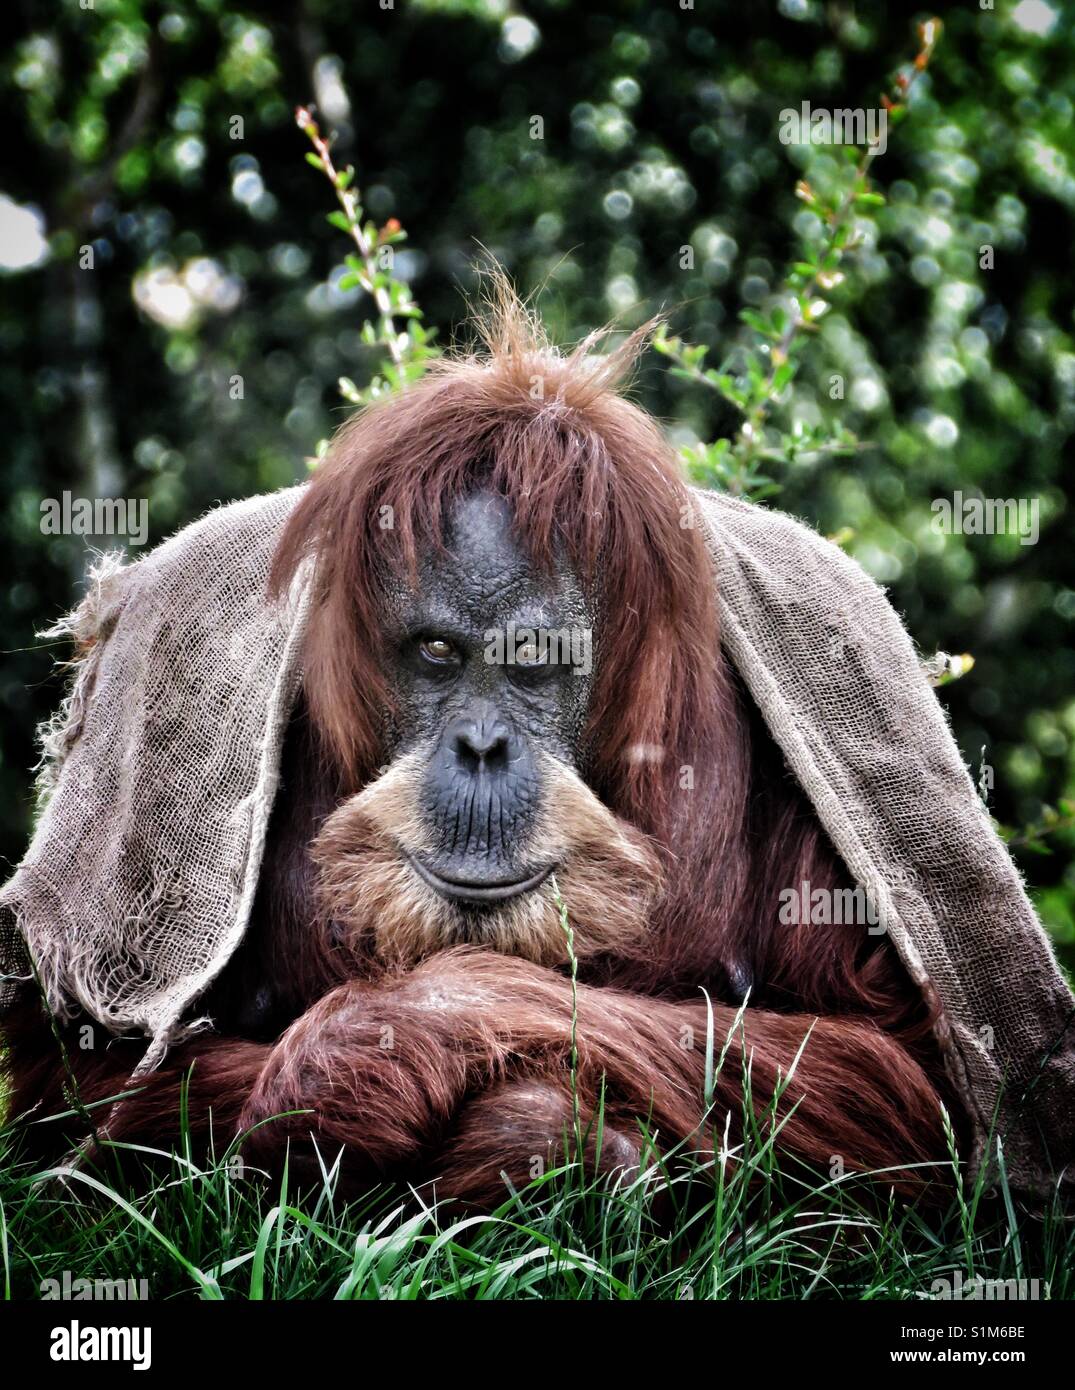 Orangutang Stock Photo